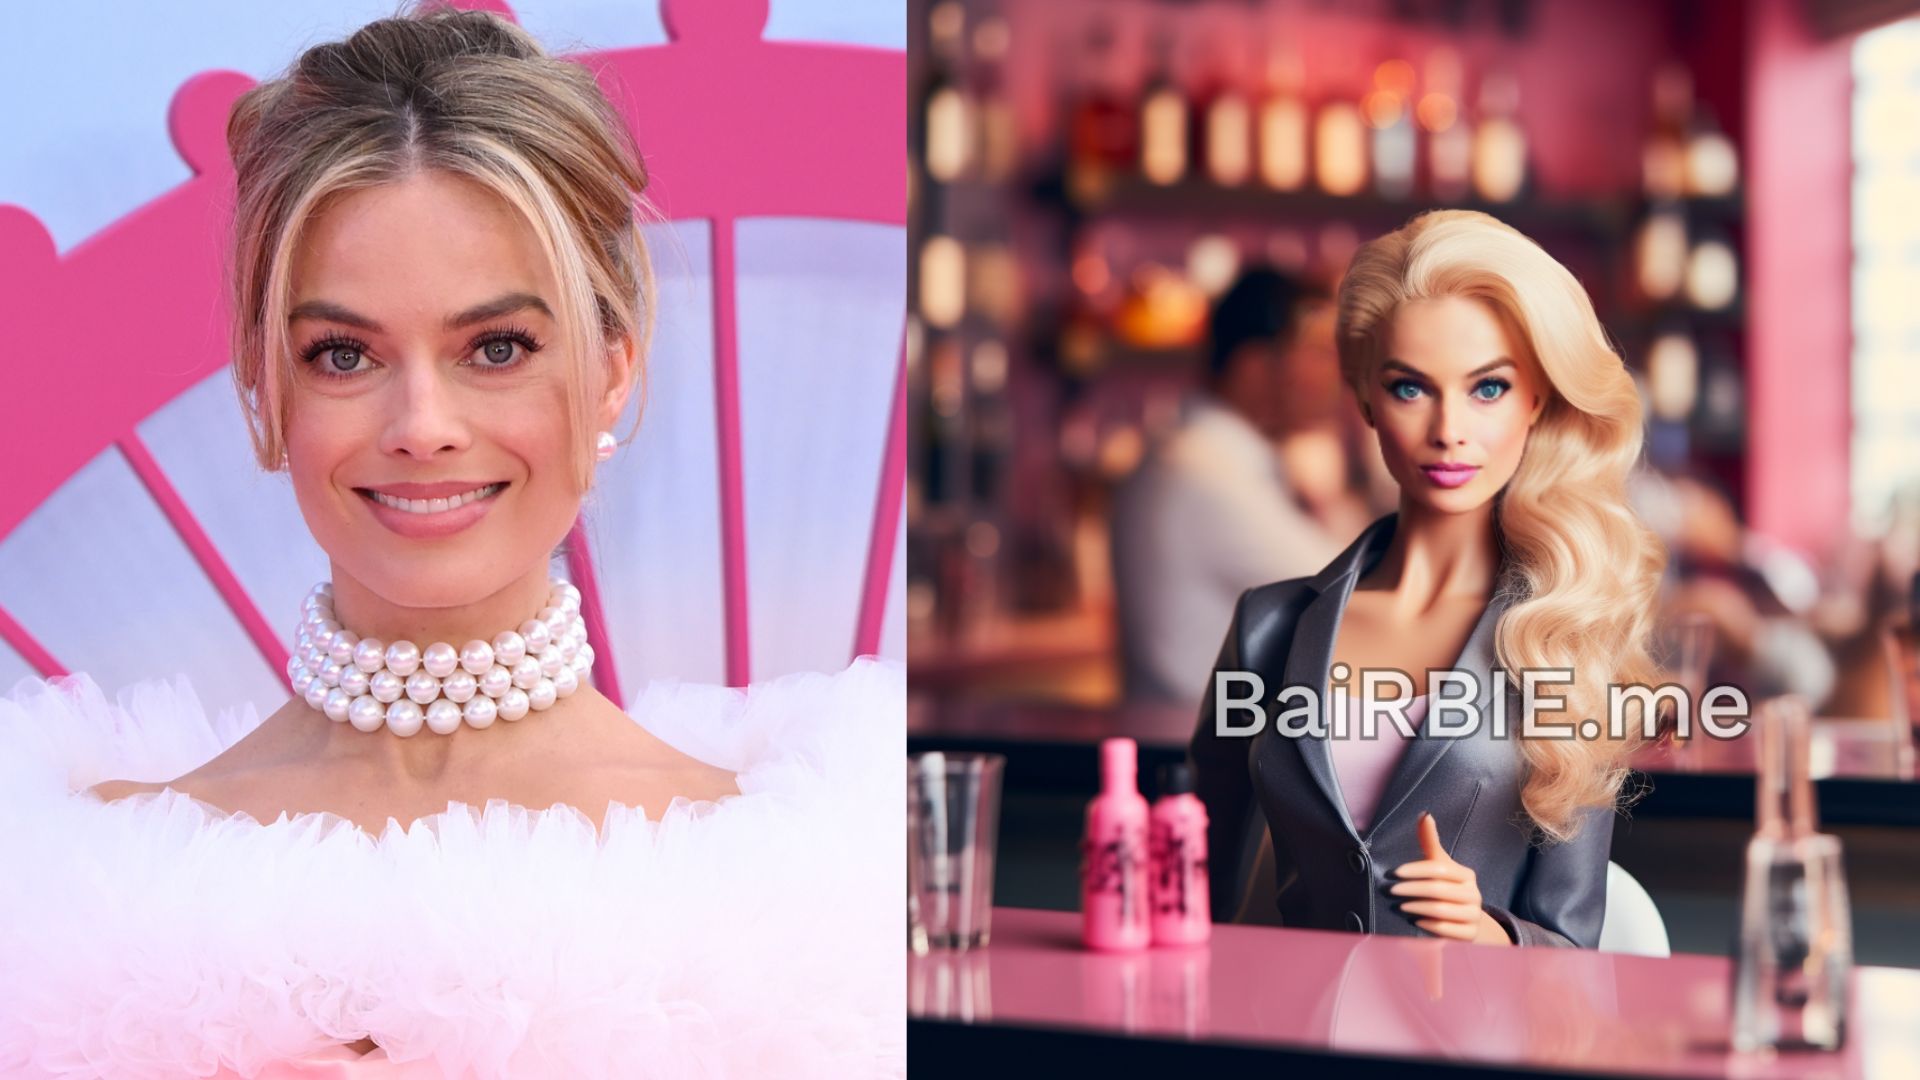 Site usa IA para transformar usuários em uma boneca Barbie